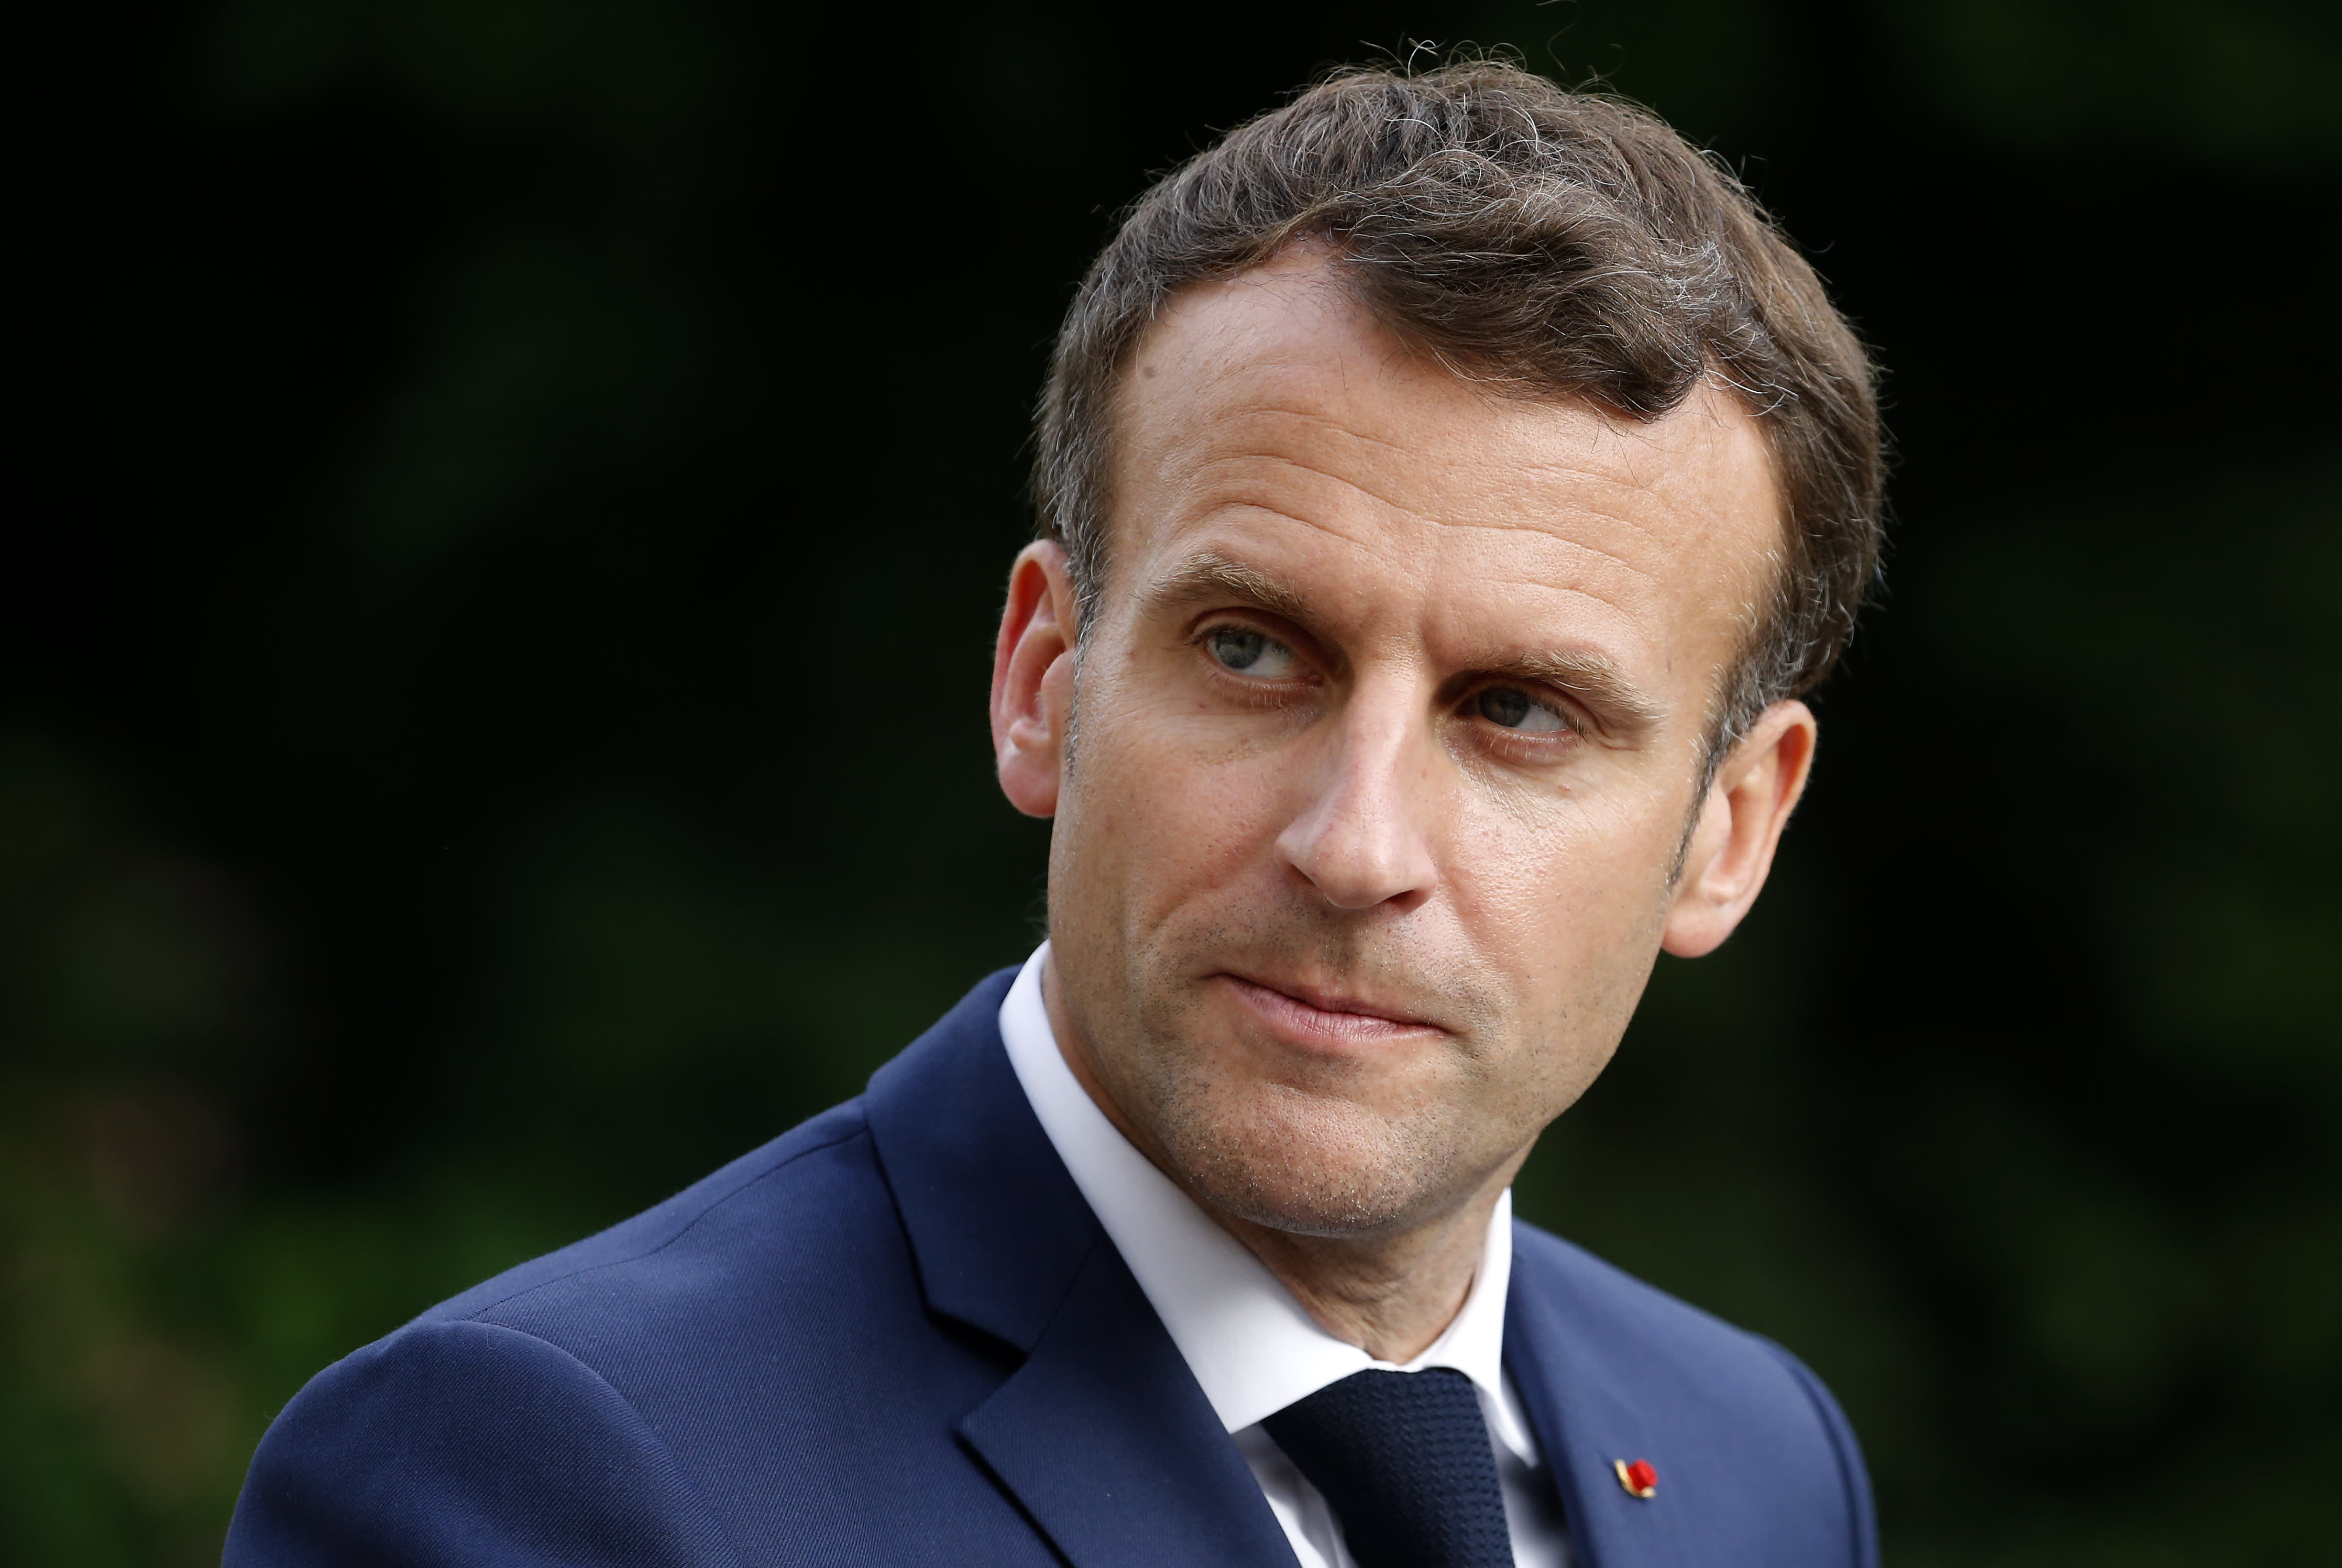 Macron xem xét cải cách lương hưu trước cuộc bầu cử